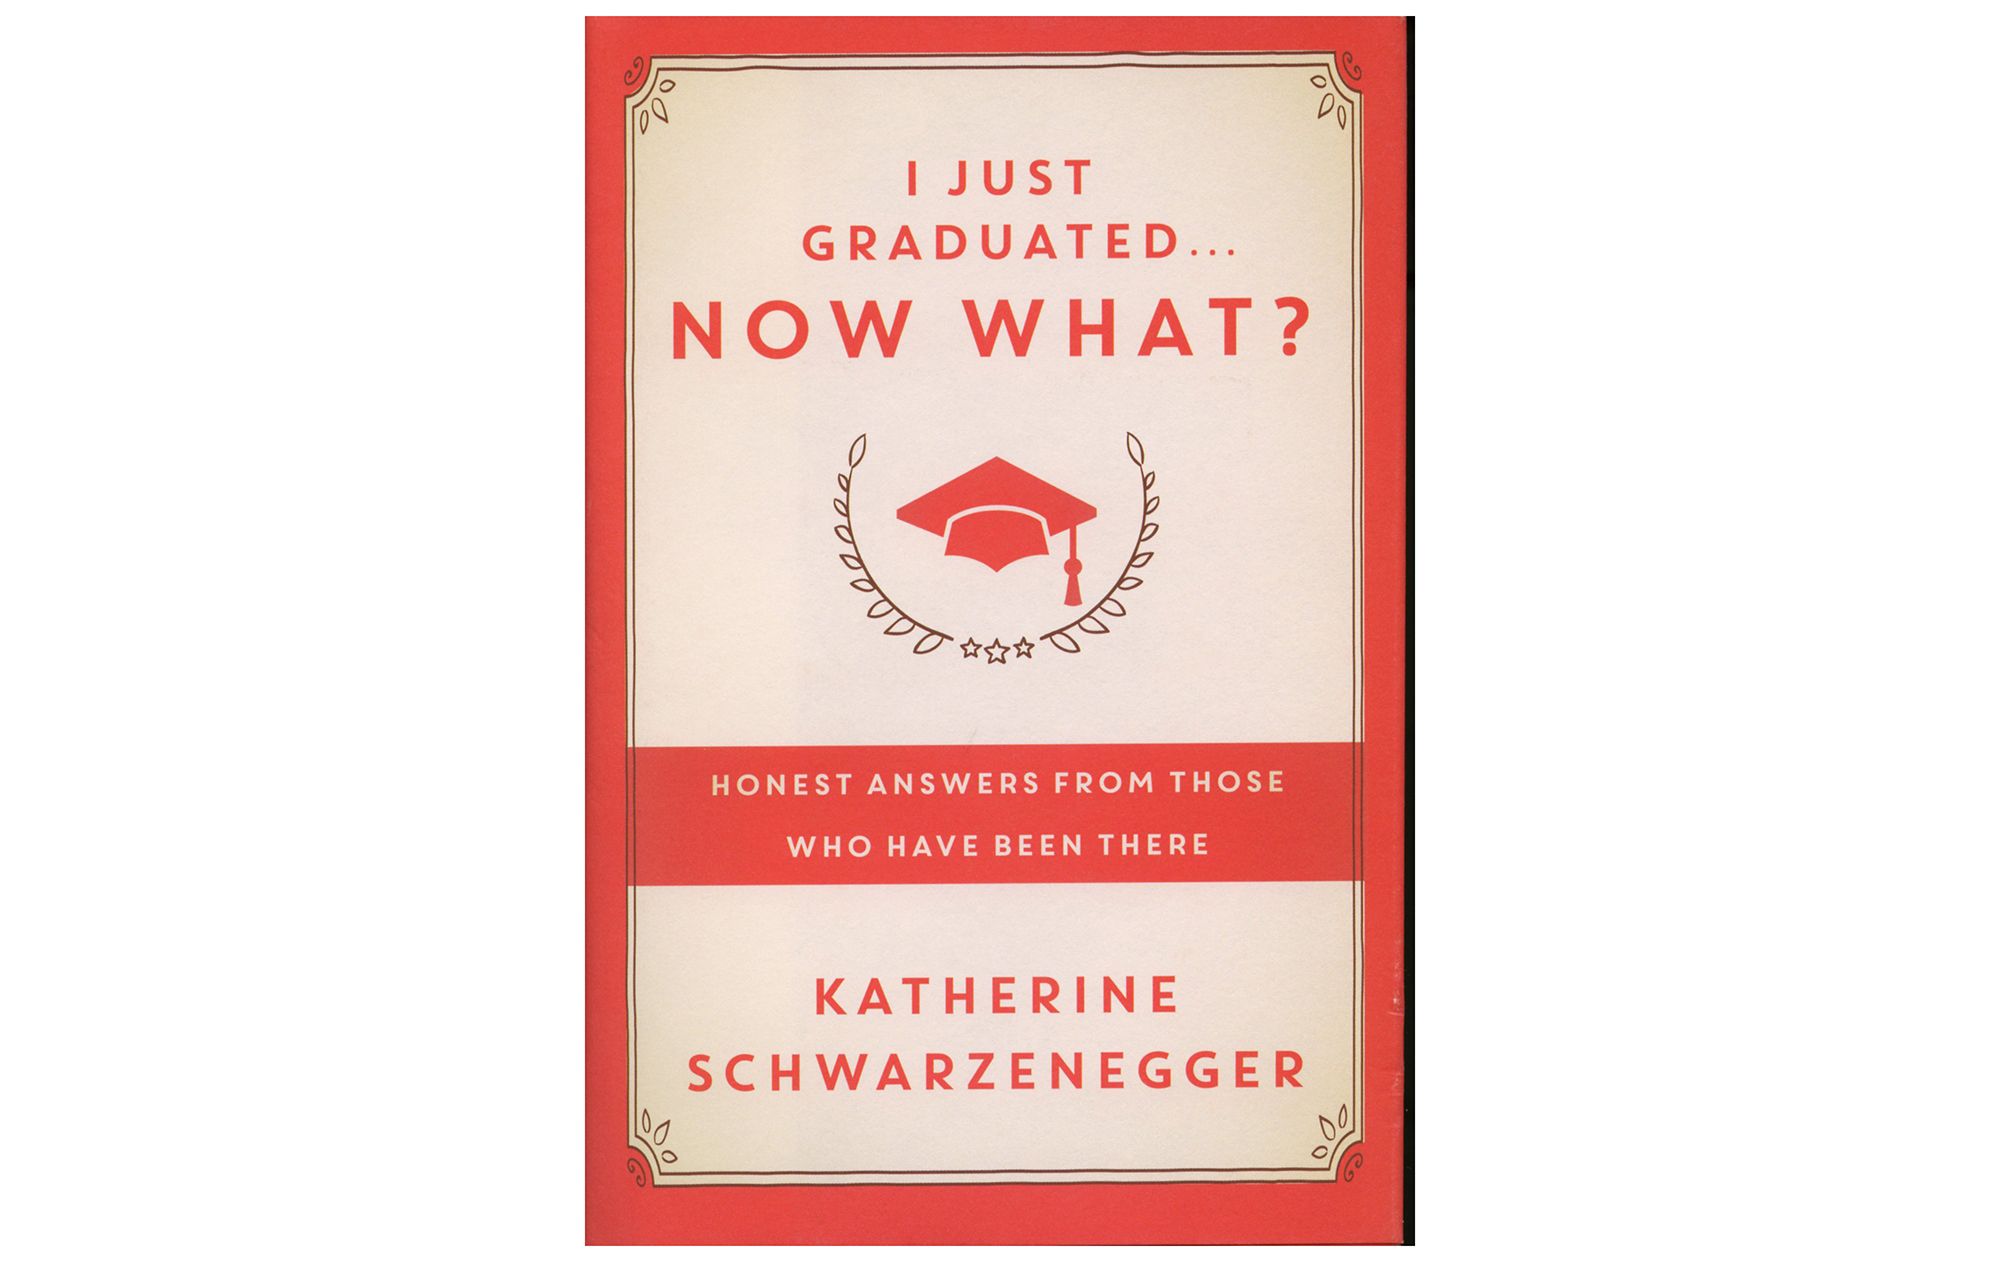 Pravkar sem diplomiral. . . Zdaj kaj ?, avtor Katherine Schwarzenegger